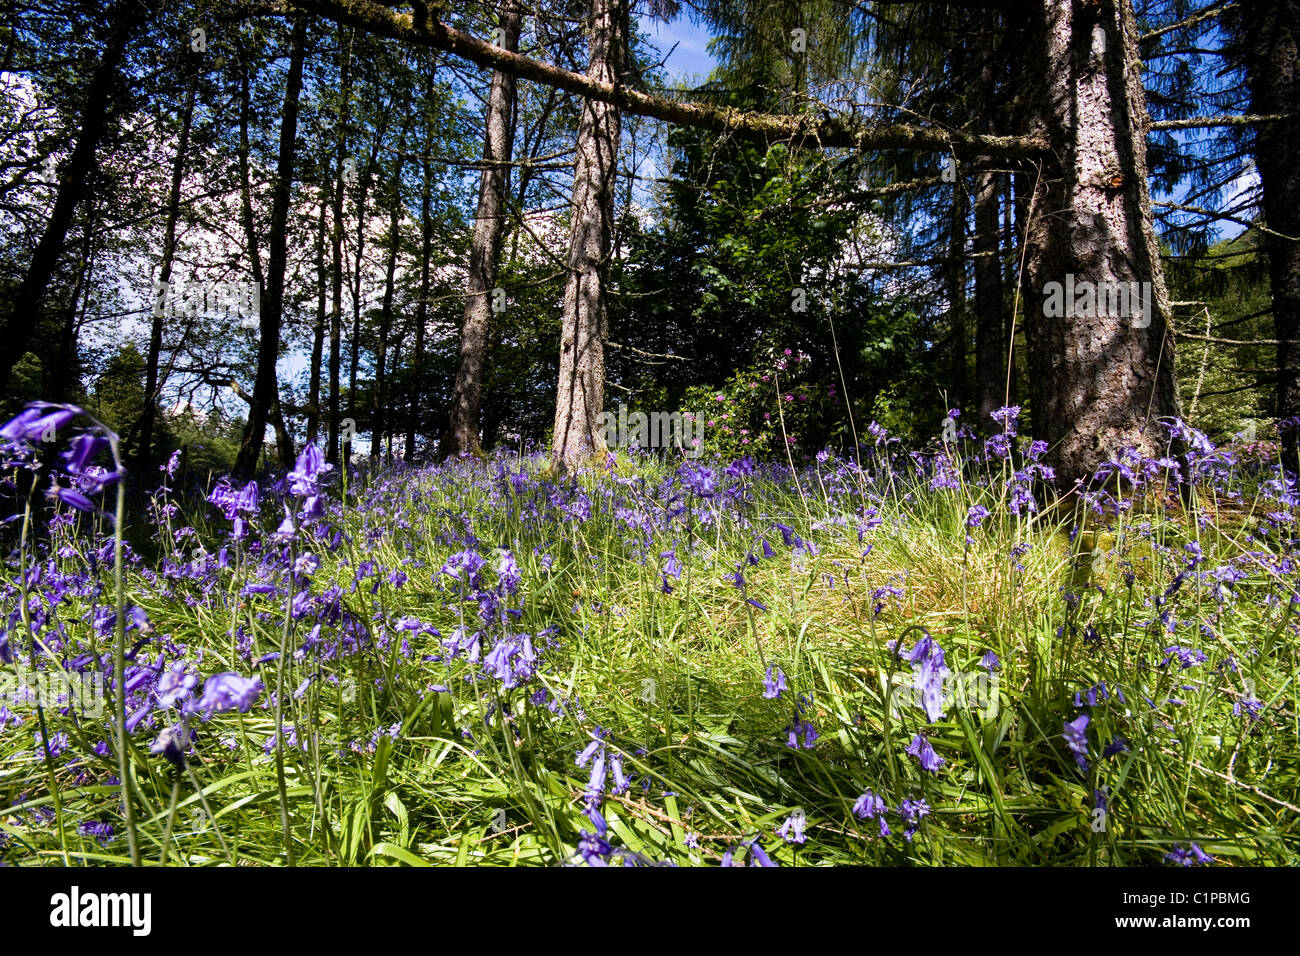 Escocia, Argyll, Inveraray, violeta, flores silvestres que crecen en bosque Foto de stock